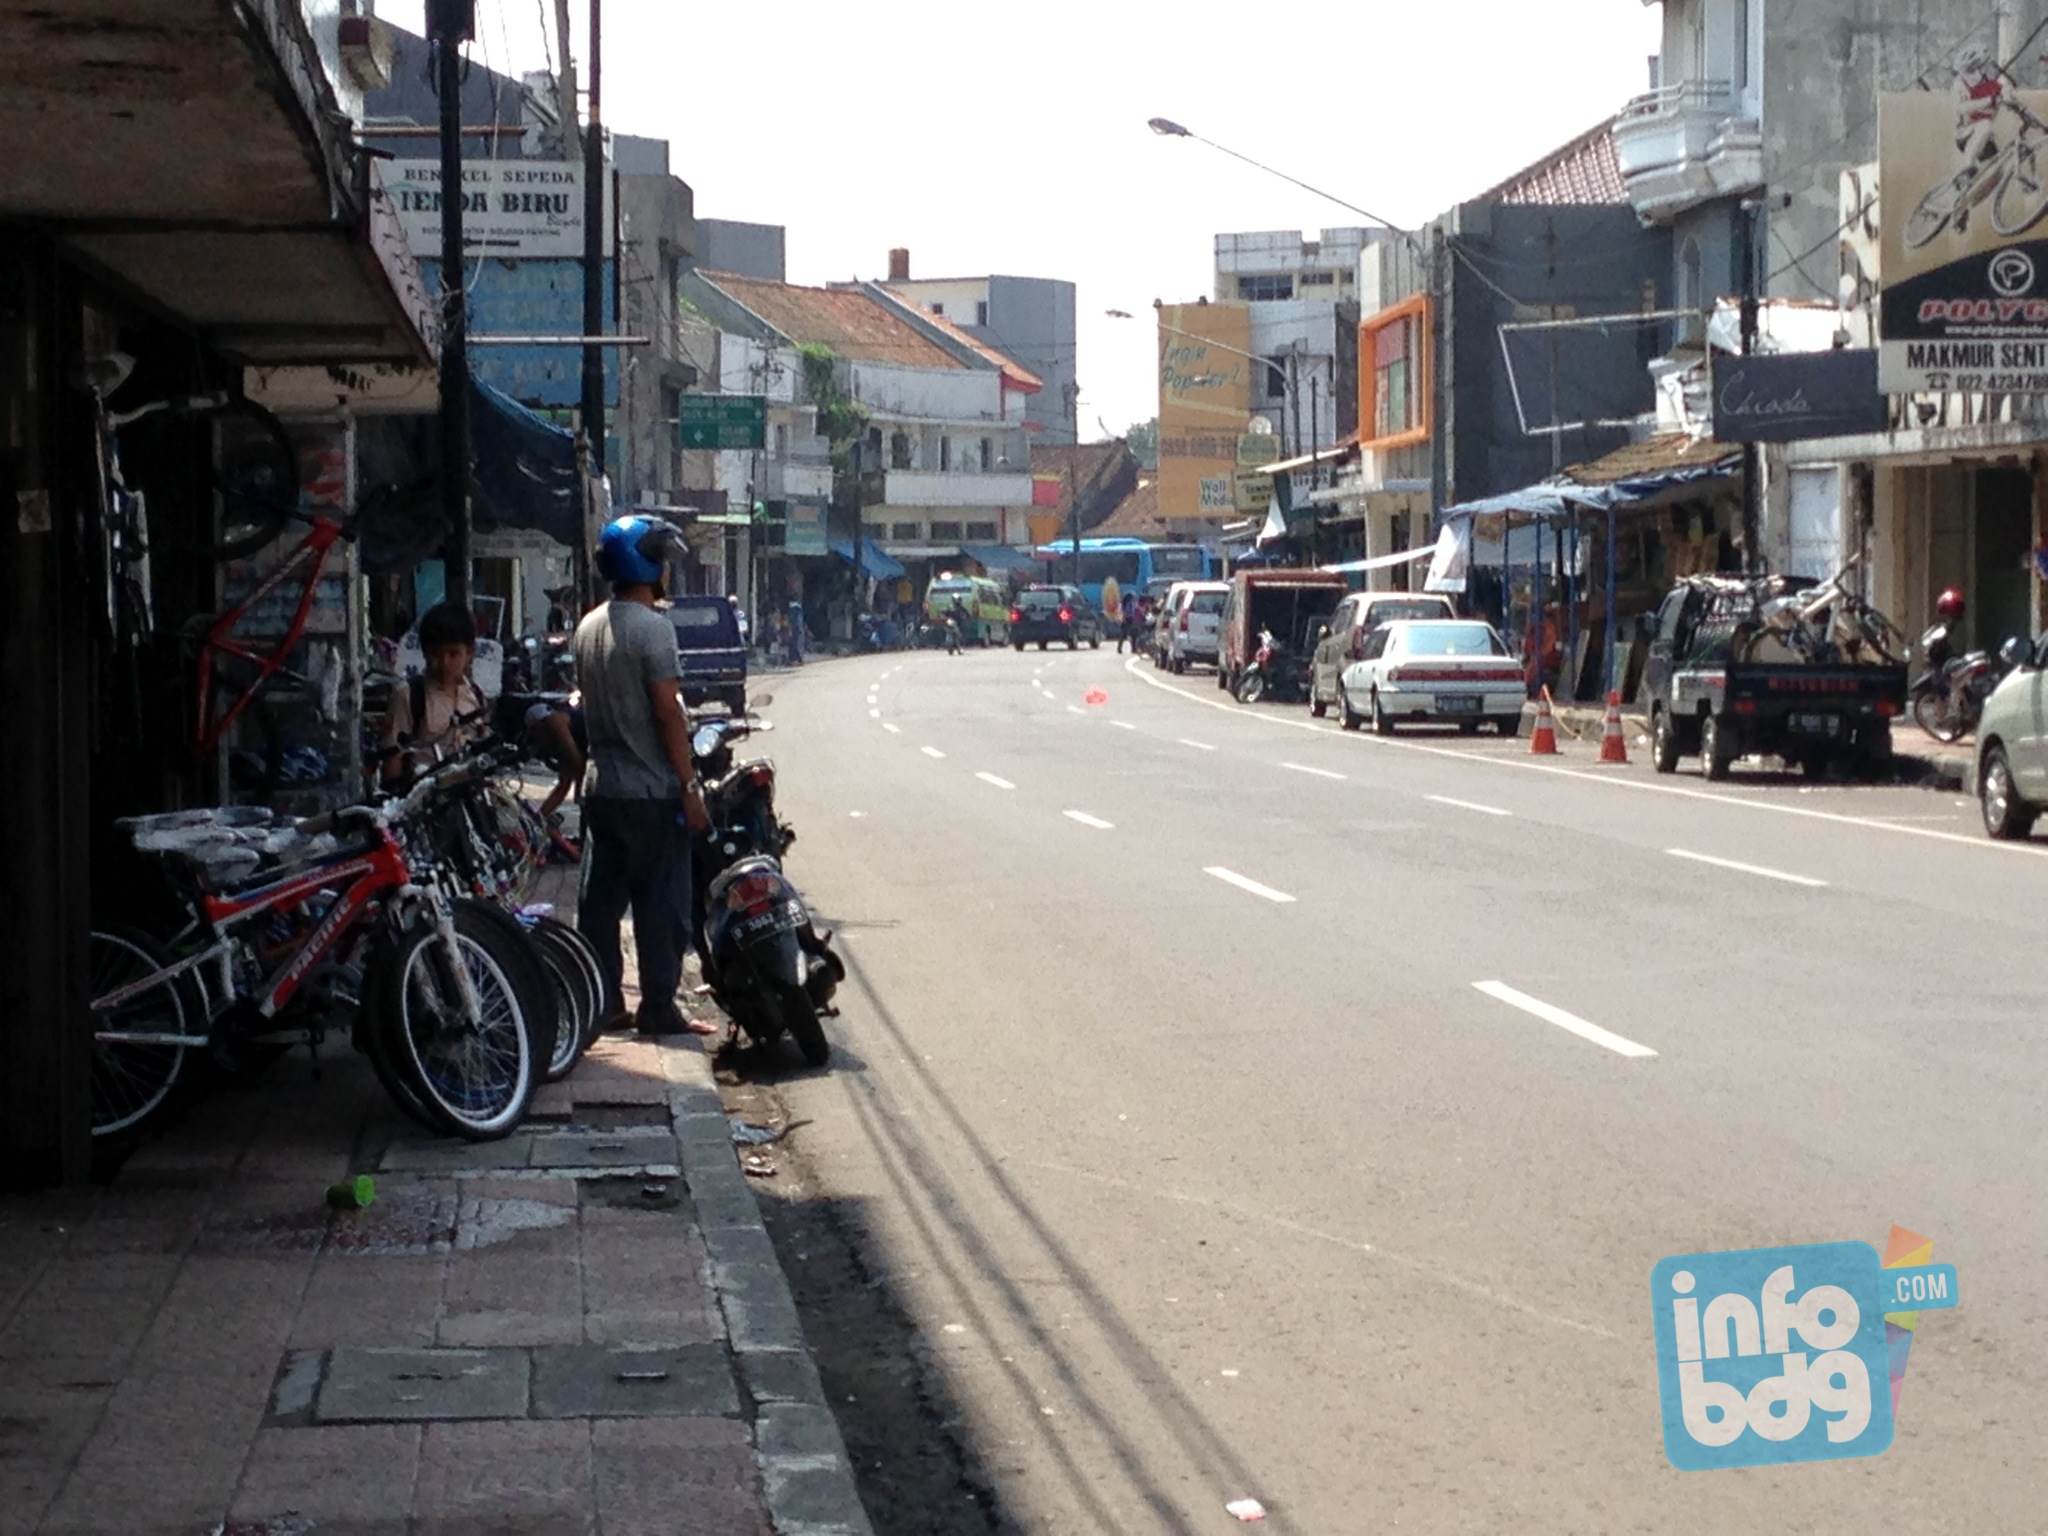 Disinilah Pusat Sepeda &amp; Bengkel Sepeda di Kota Bandung &#91;Gowes-ers Bandung Masuk...&#93;